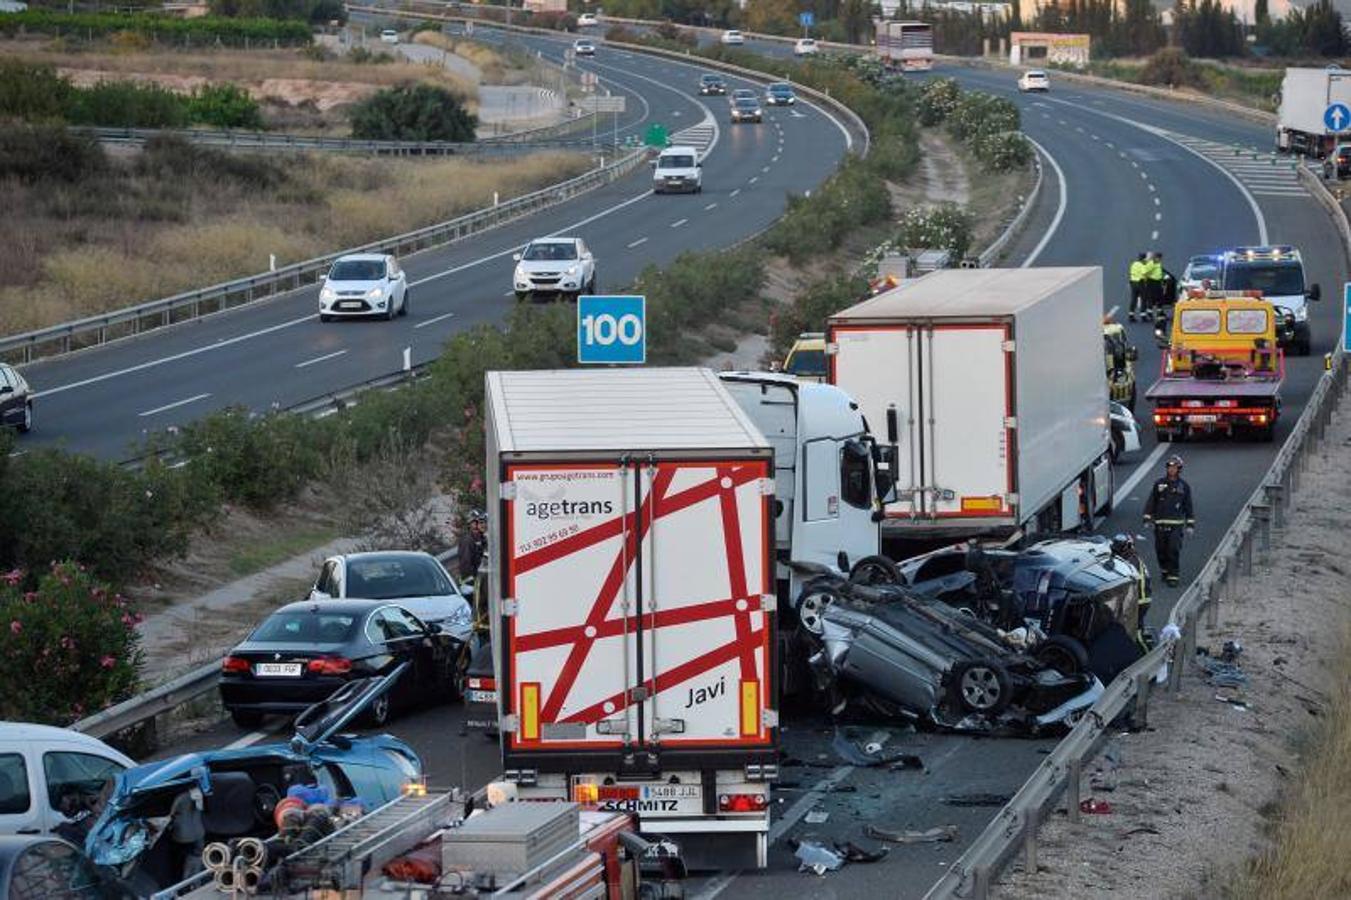 Fotos del accidente mortal en la A-7 en Murcia, donde han fallecido 5 personas